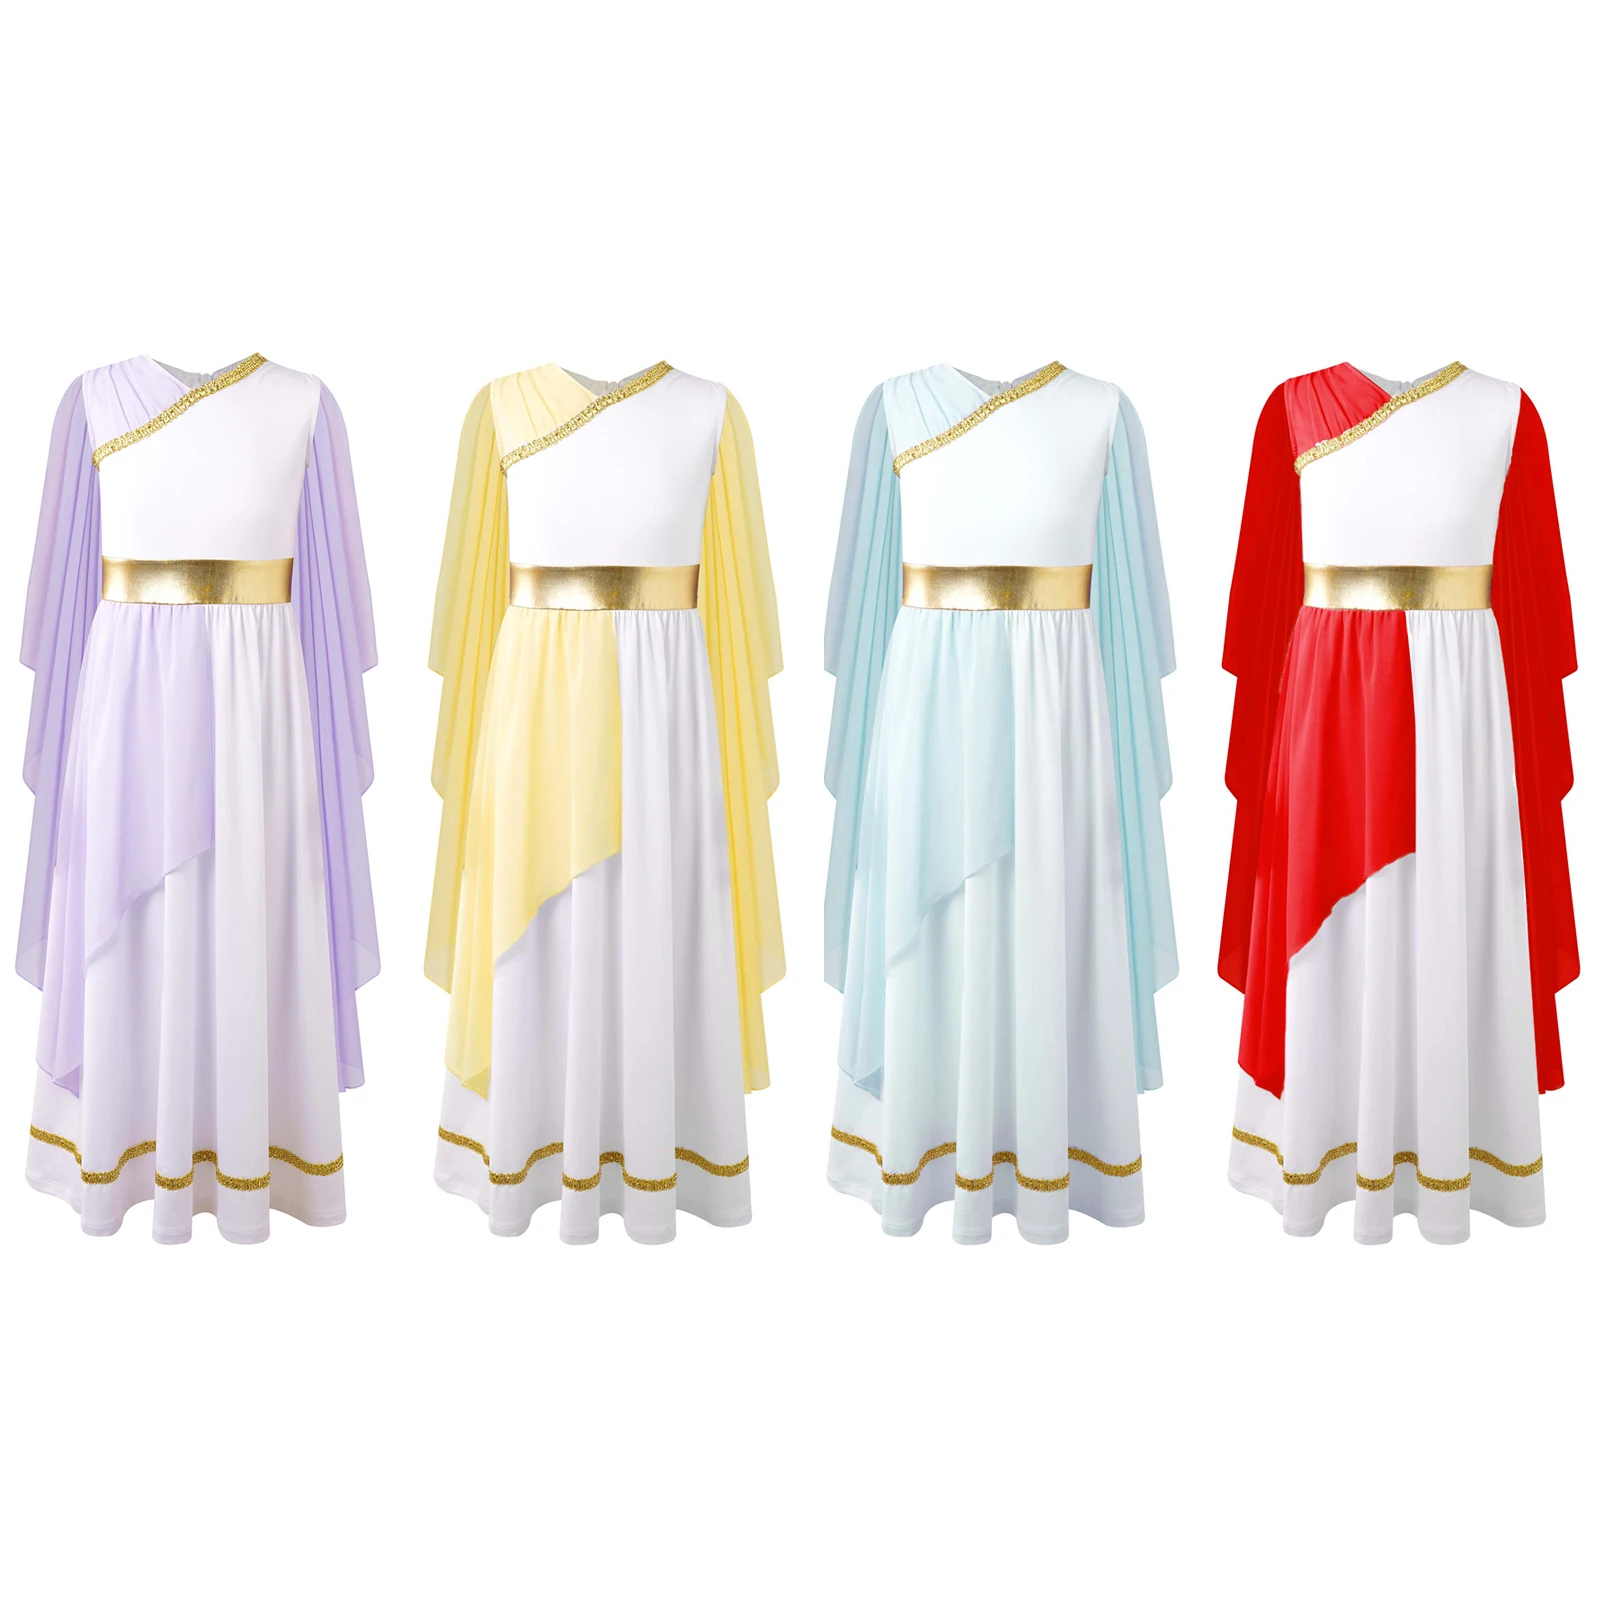 Sewing an ancient Roman dress: a short tutorial. | Roman dress, Roman  clothes, Roman fashion